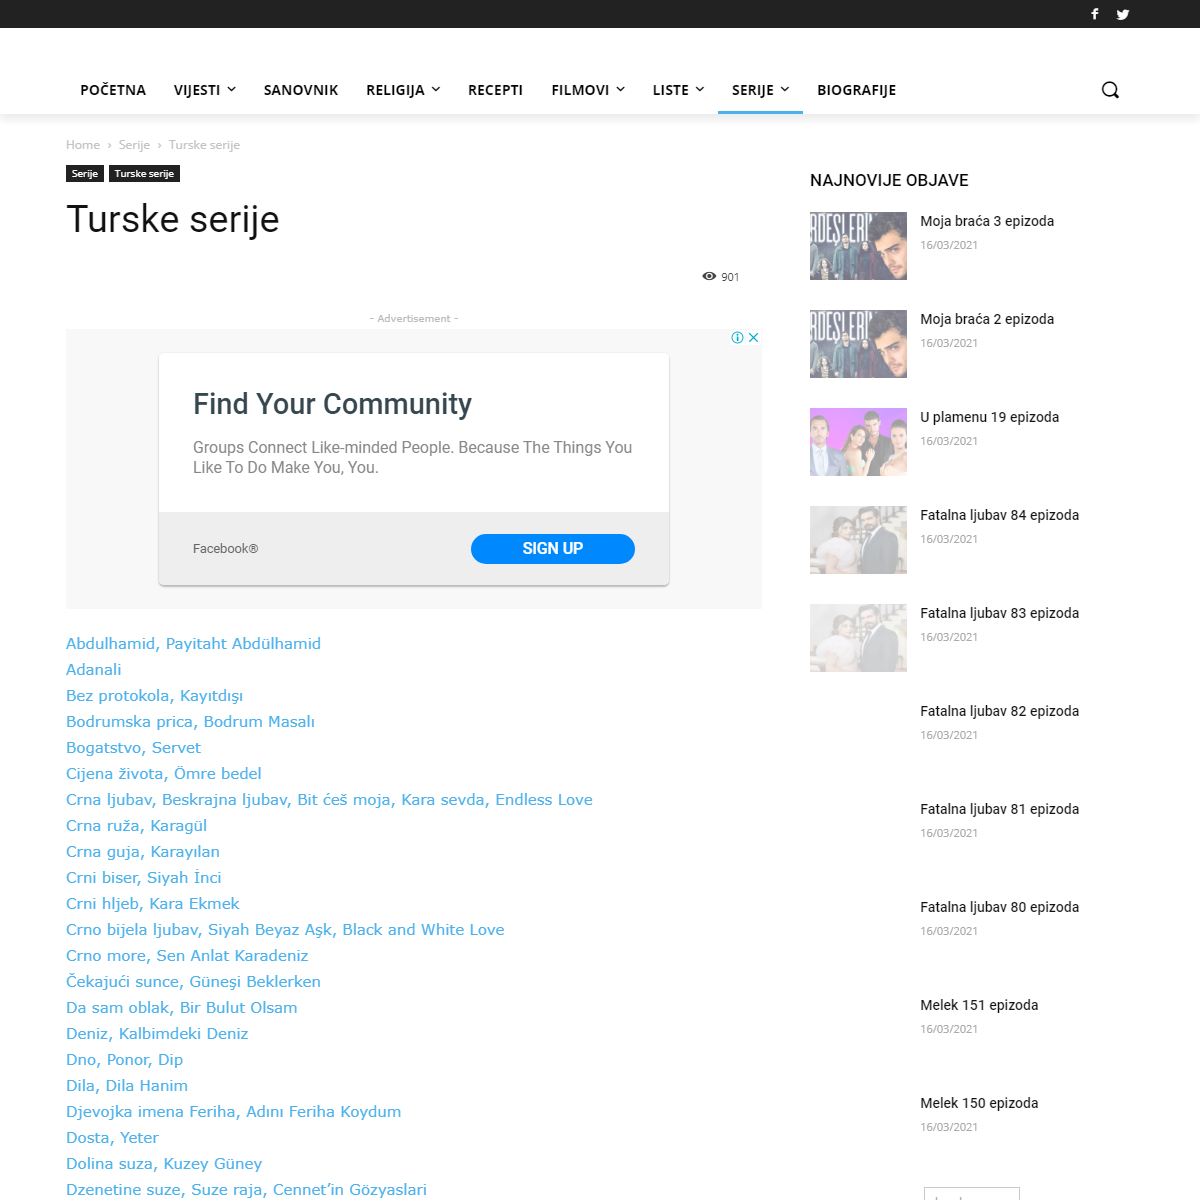 A complete backup of https://bh-vjesnik.net/turske-serije/